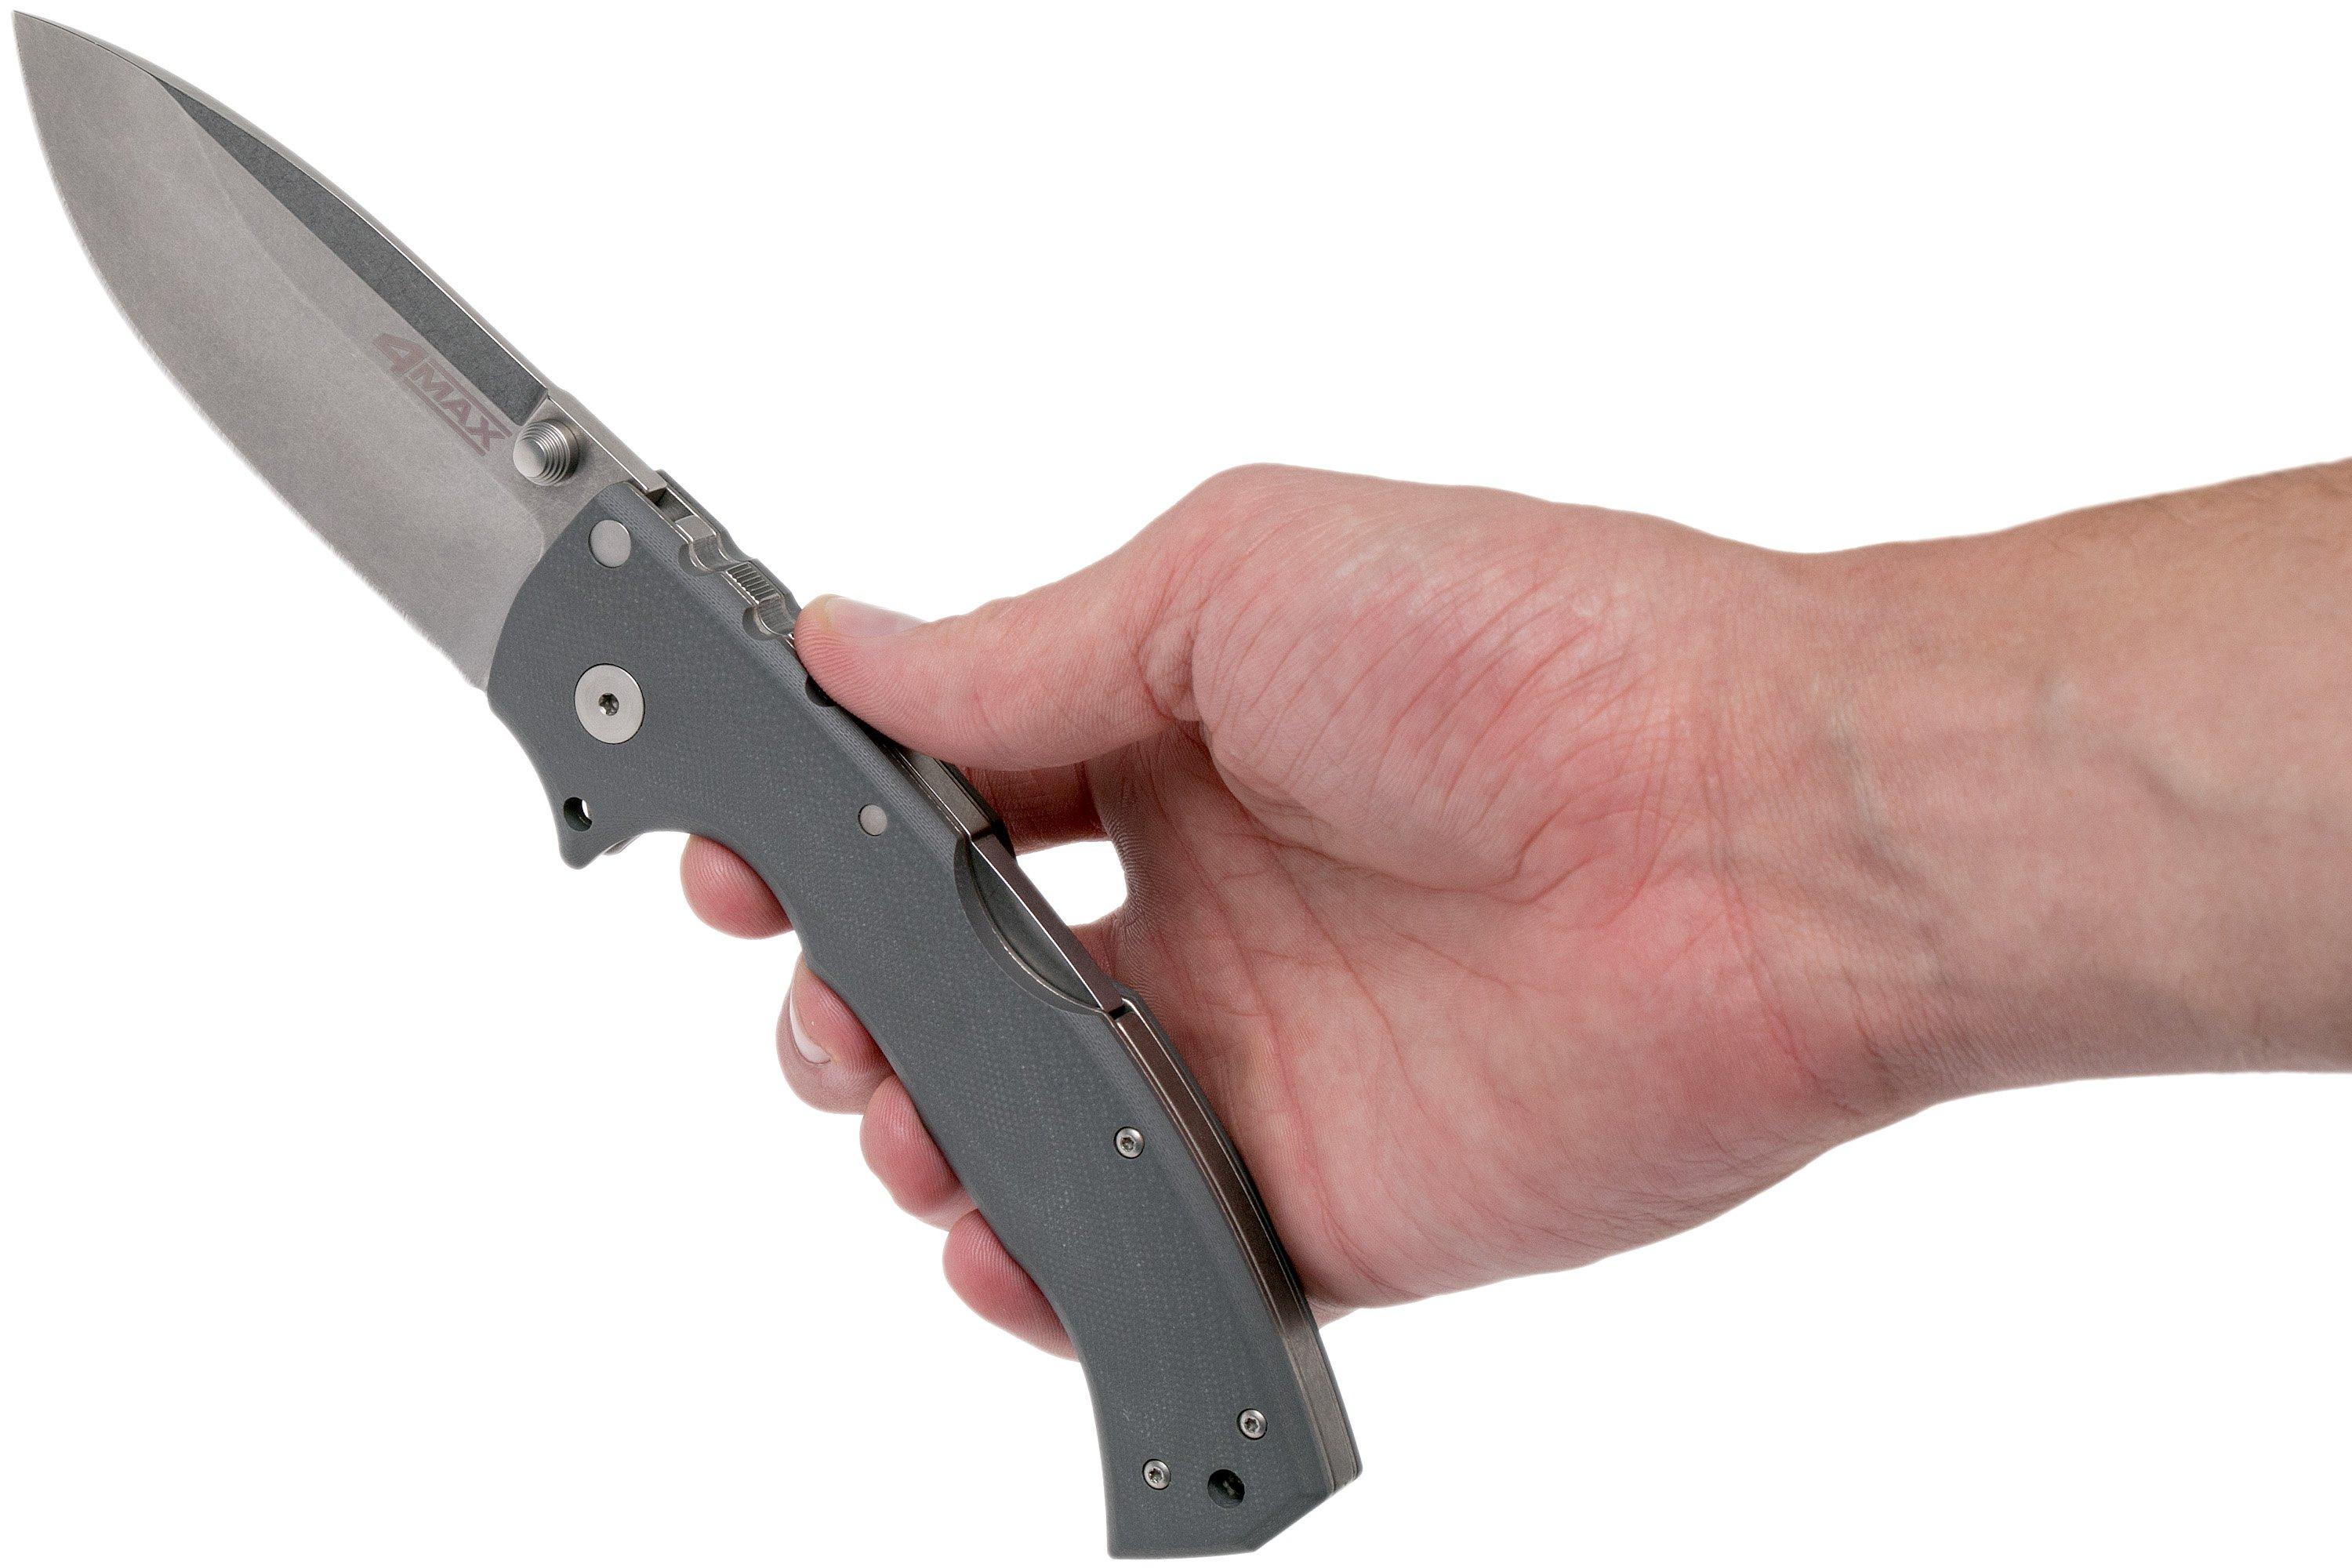 cold-steel-4-max-pocket-knife-62rn-andrew-demko-design-2017-version